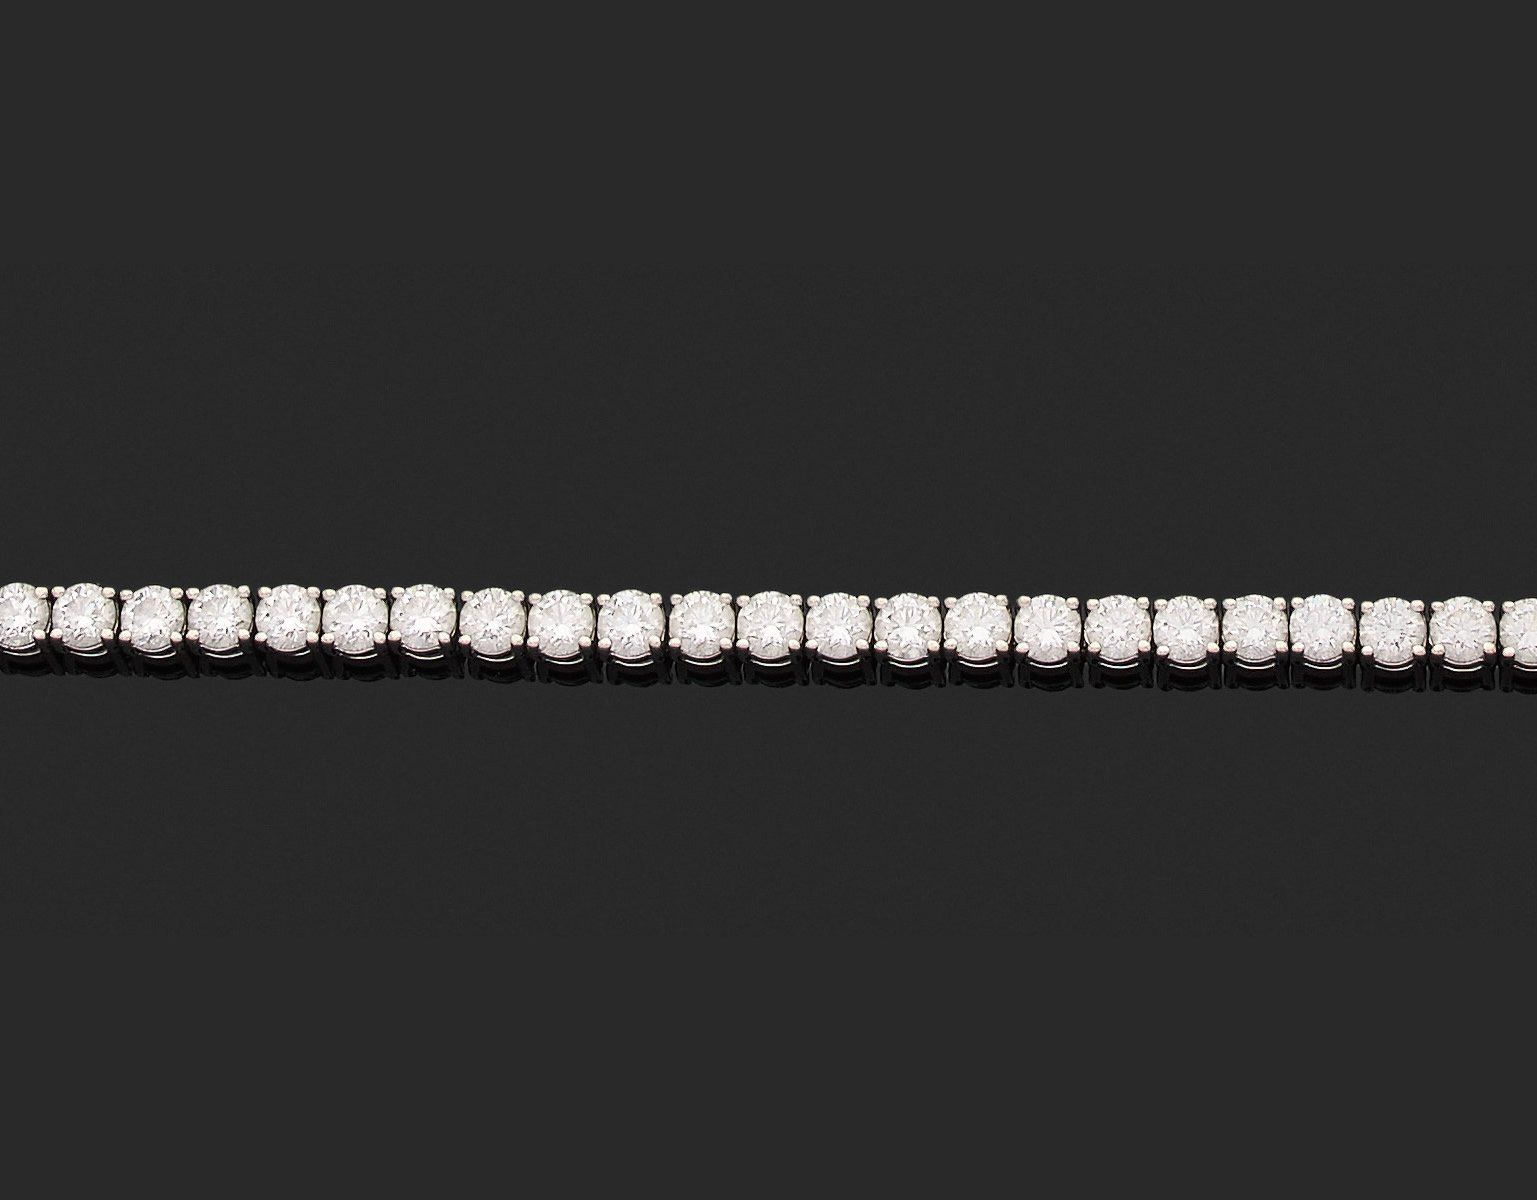 Null 铰接式手镯 

585千分之一的白金，完全镶嵌了44颗圆形明亮式切割钻石。

长18.2厘米。
毛重19.1克。